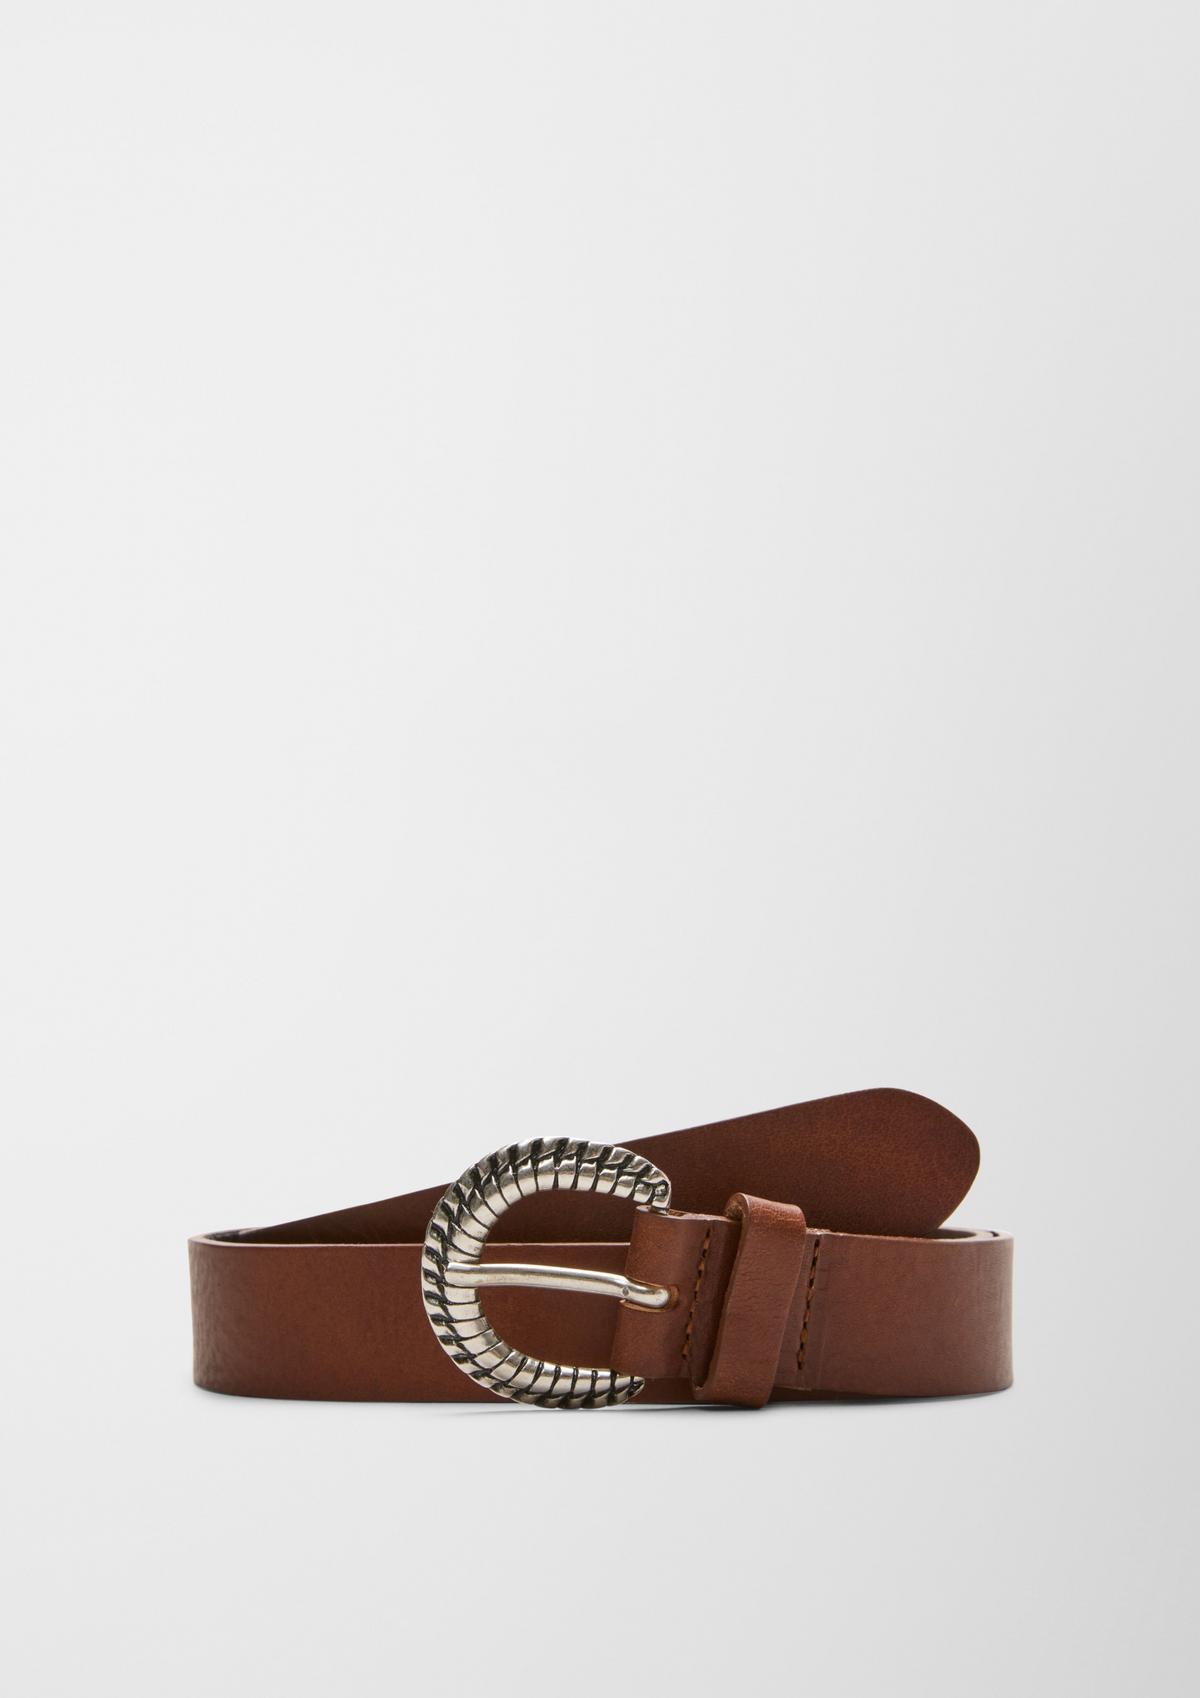 SALE: Belts for Women